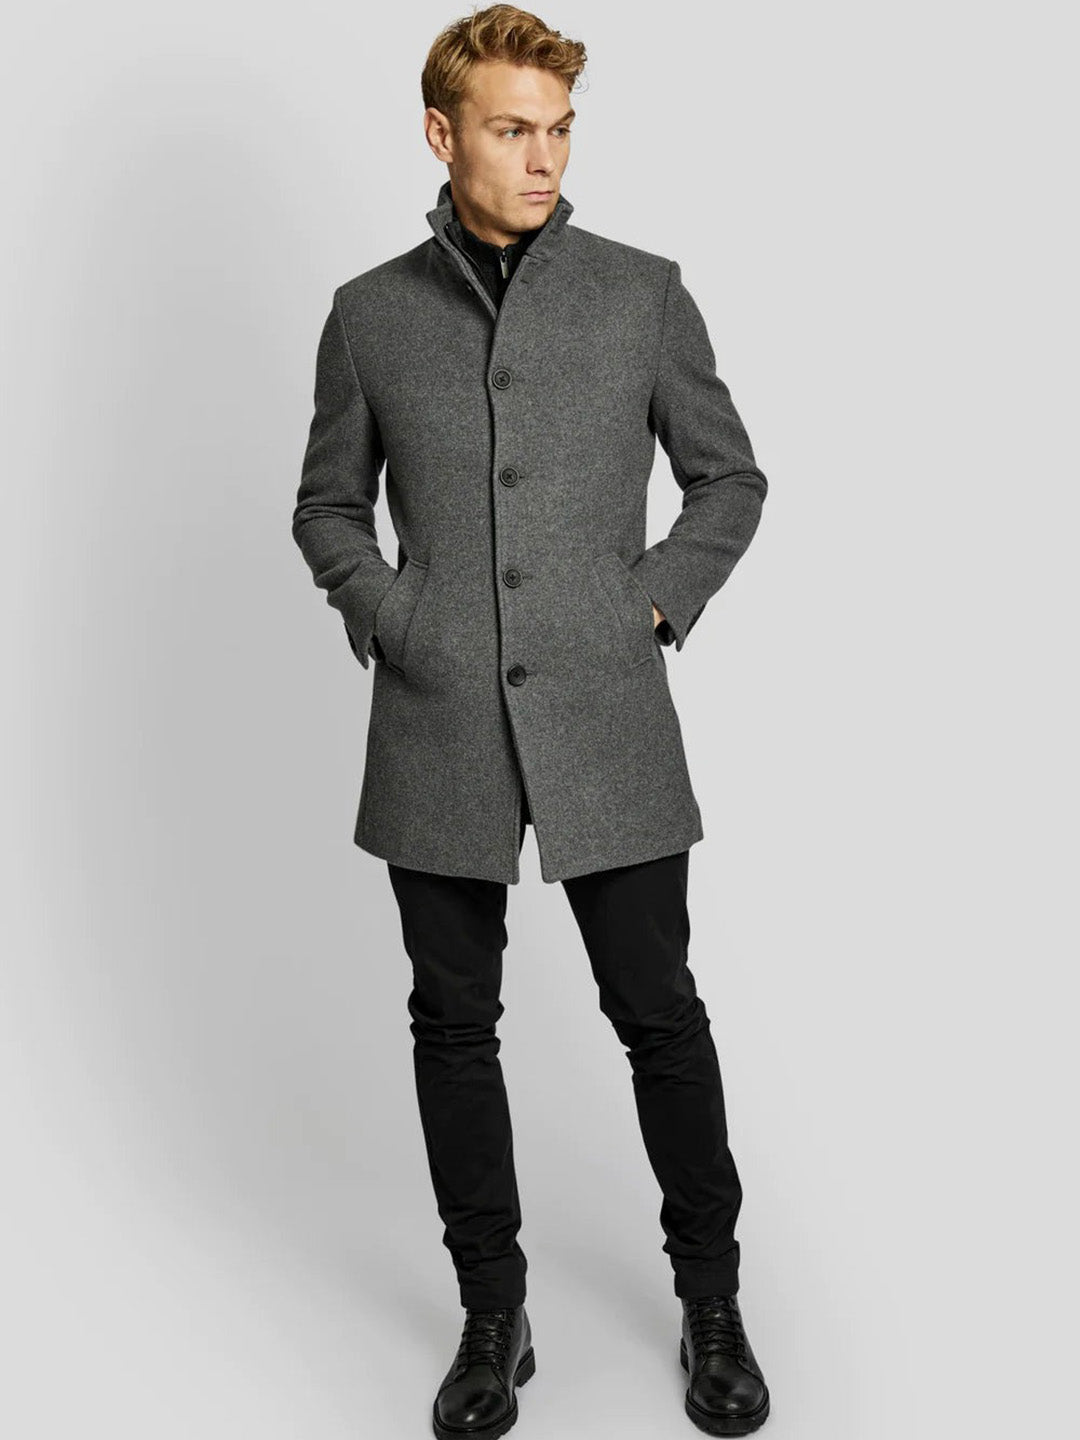 Grey Coat - Buy Grey Coat online in India